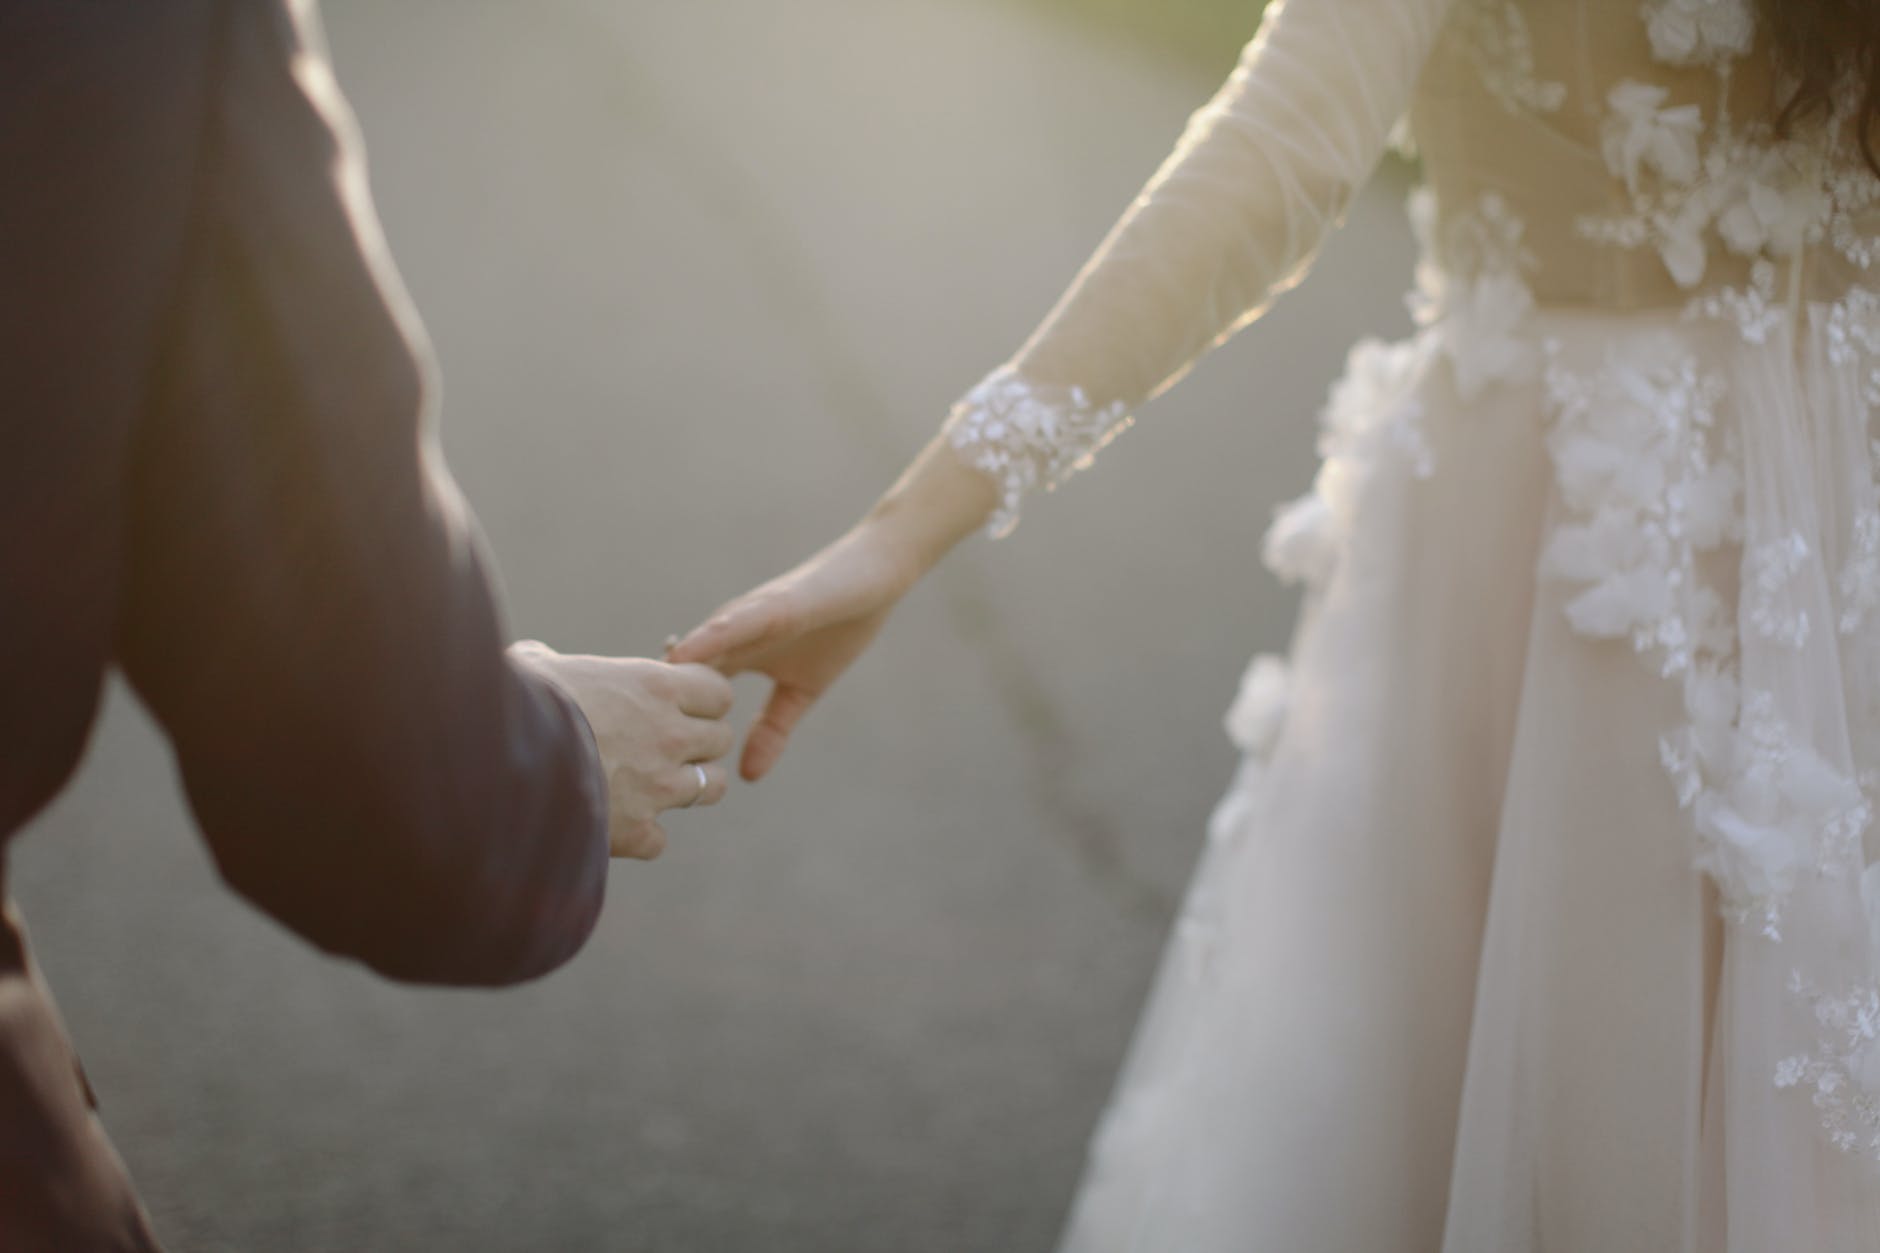 Ένας γάμος μπάχαλο - Το μαυρισμένο μάτι της νύφης, ο άτυχος κουμπάρος και το ασθενοφόρο